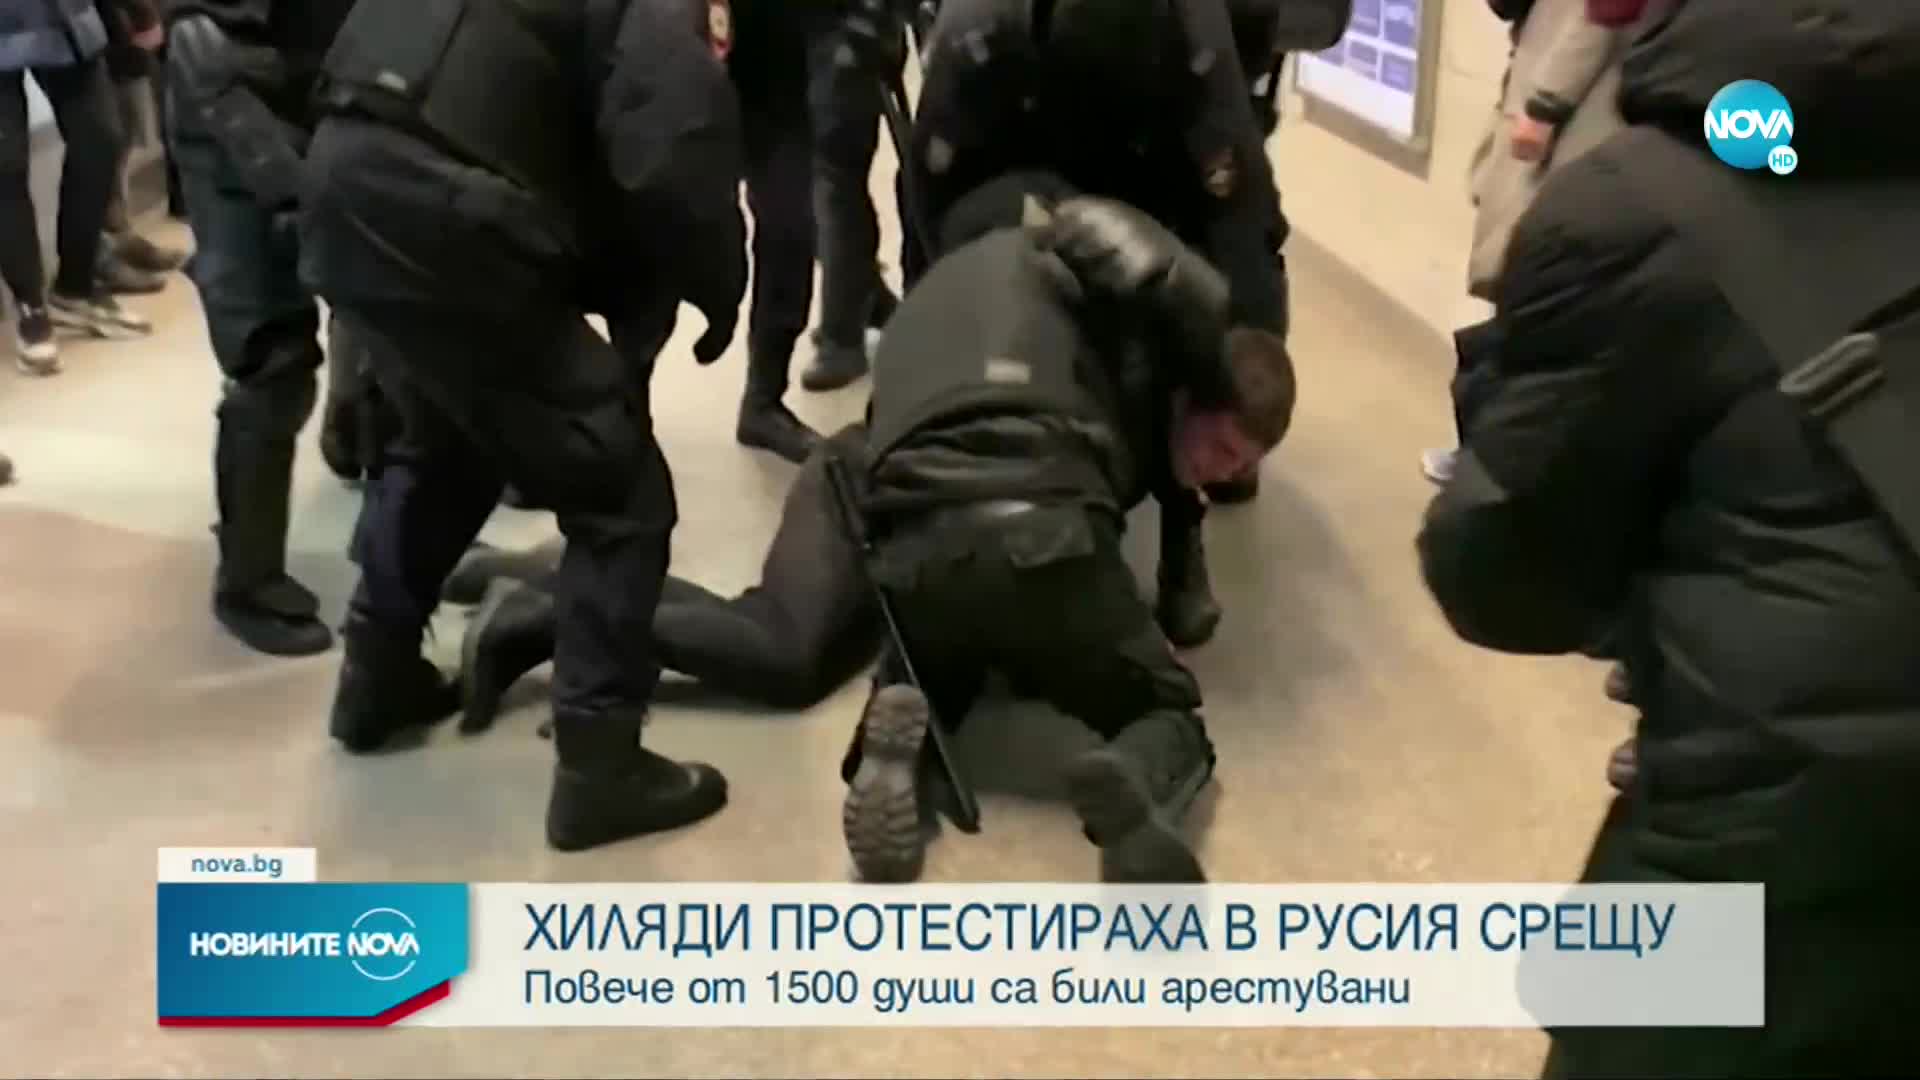 Повече от 1500 души са били арестувани по време на протестите в Русия